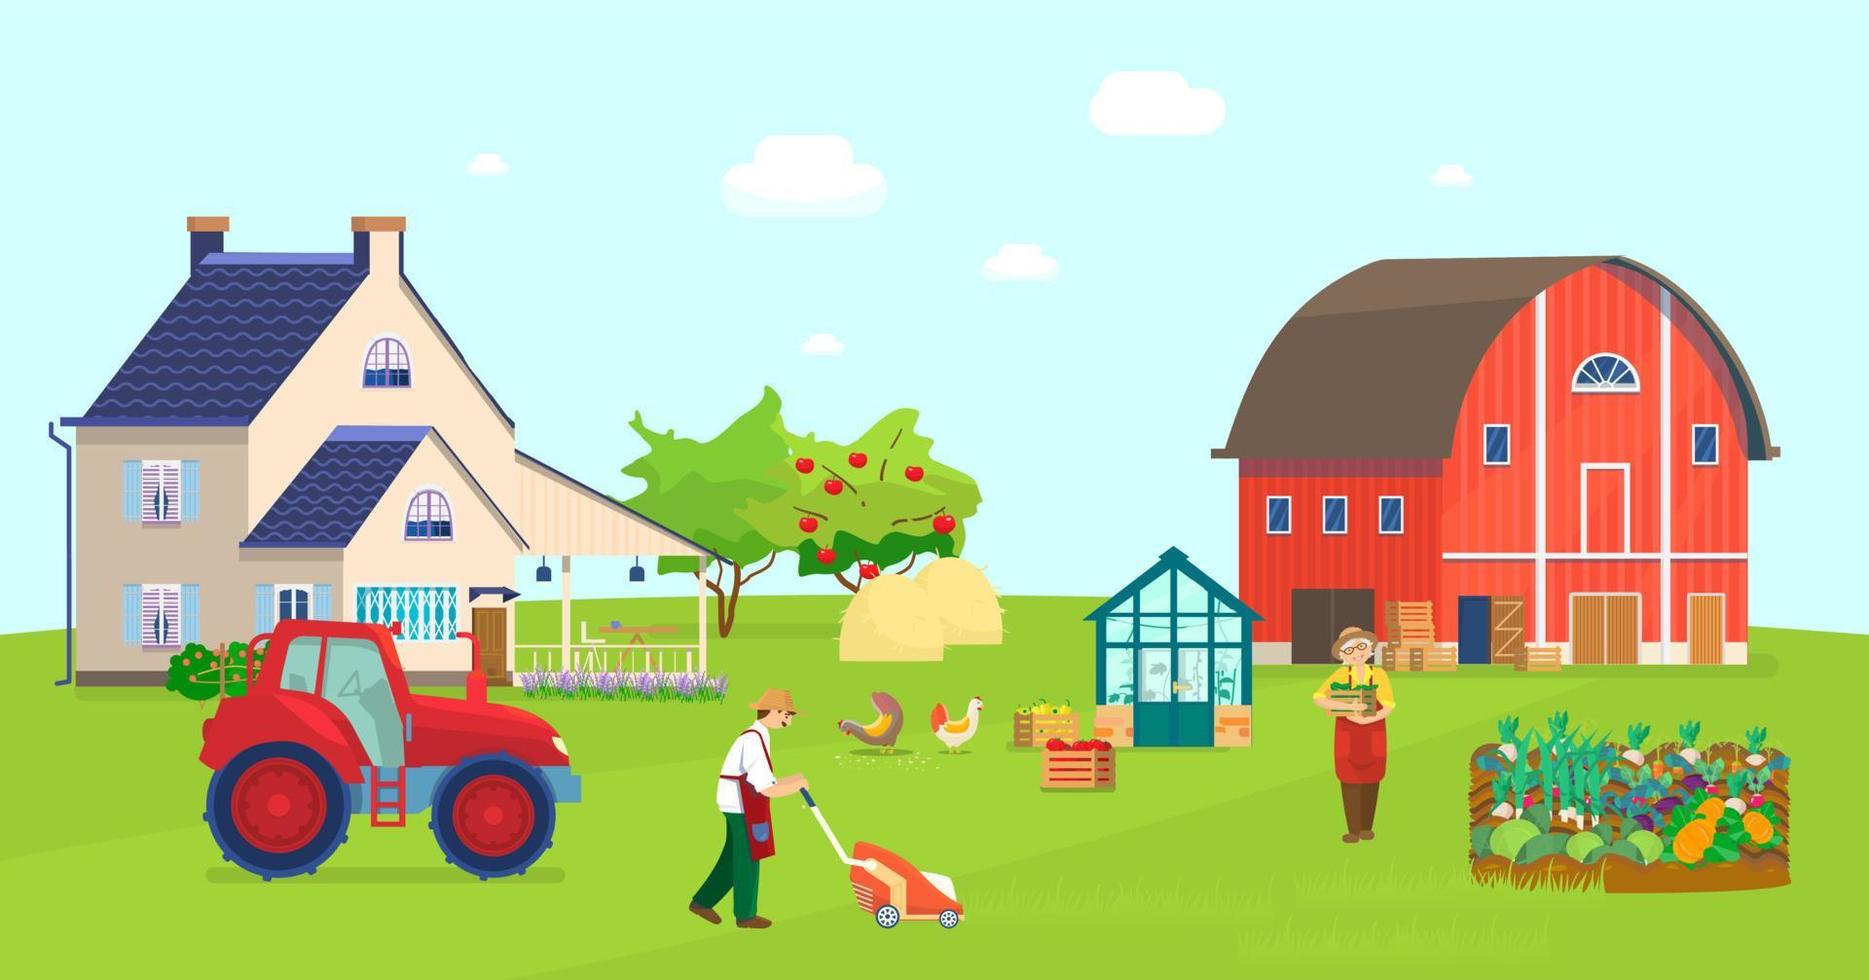 illustrazione vettoriale della scena della fattoria. fienile rosso, aiuole, trattore, serra con piante, meli, cassette con verdure, giardiniere che falcia il prato, polli che beccano il grano, pagliai, fiori.